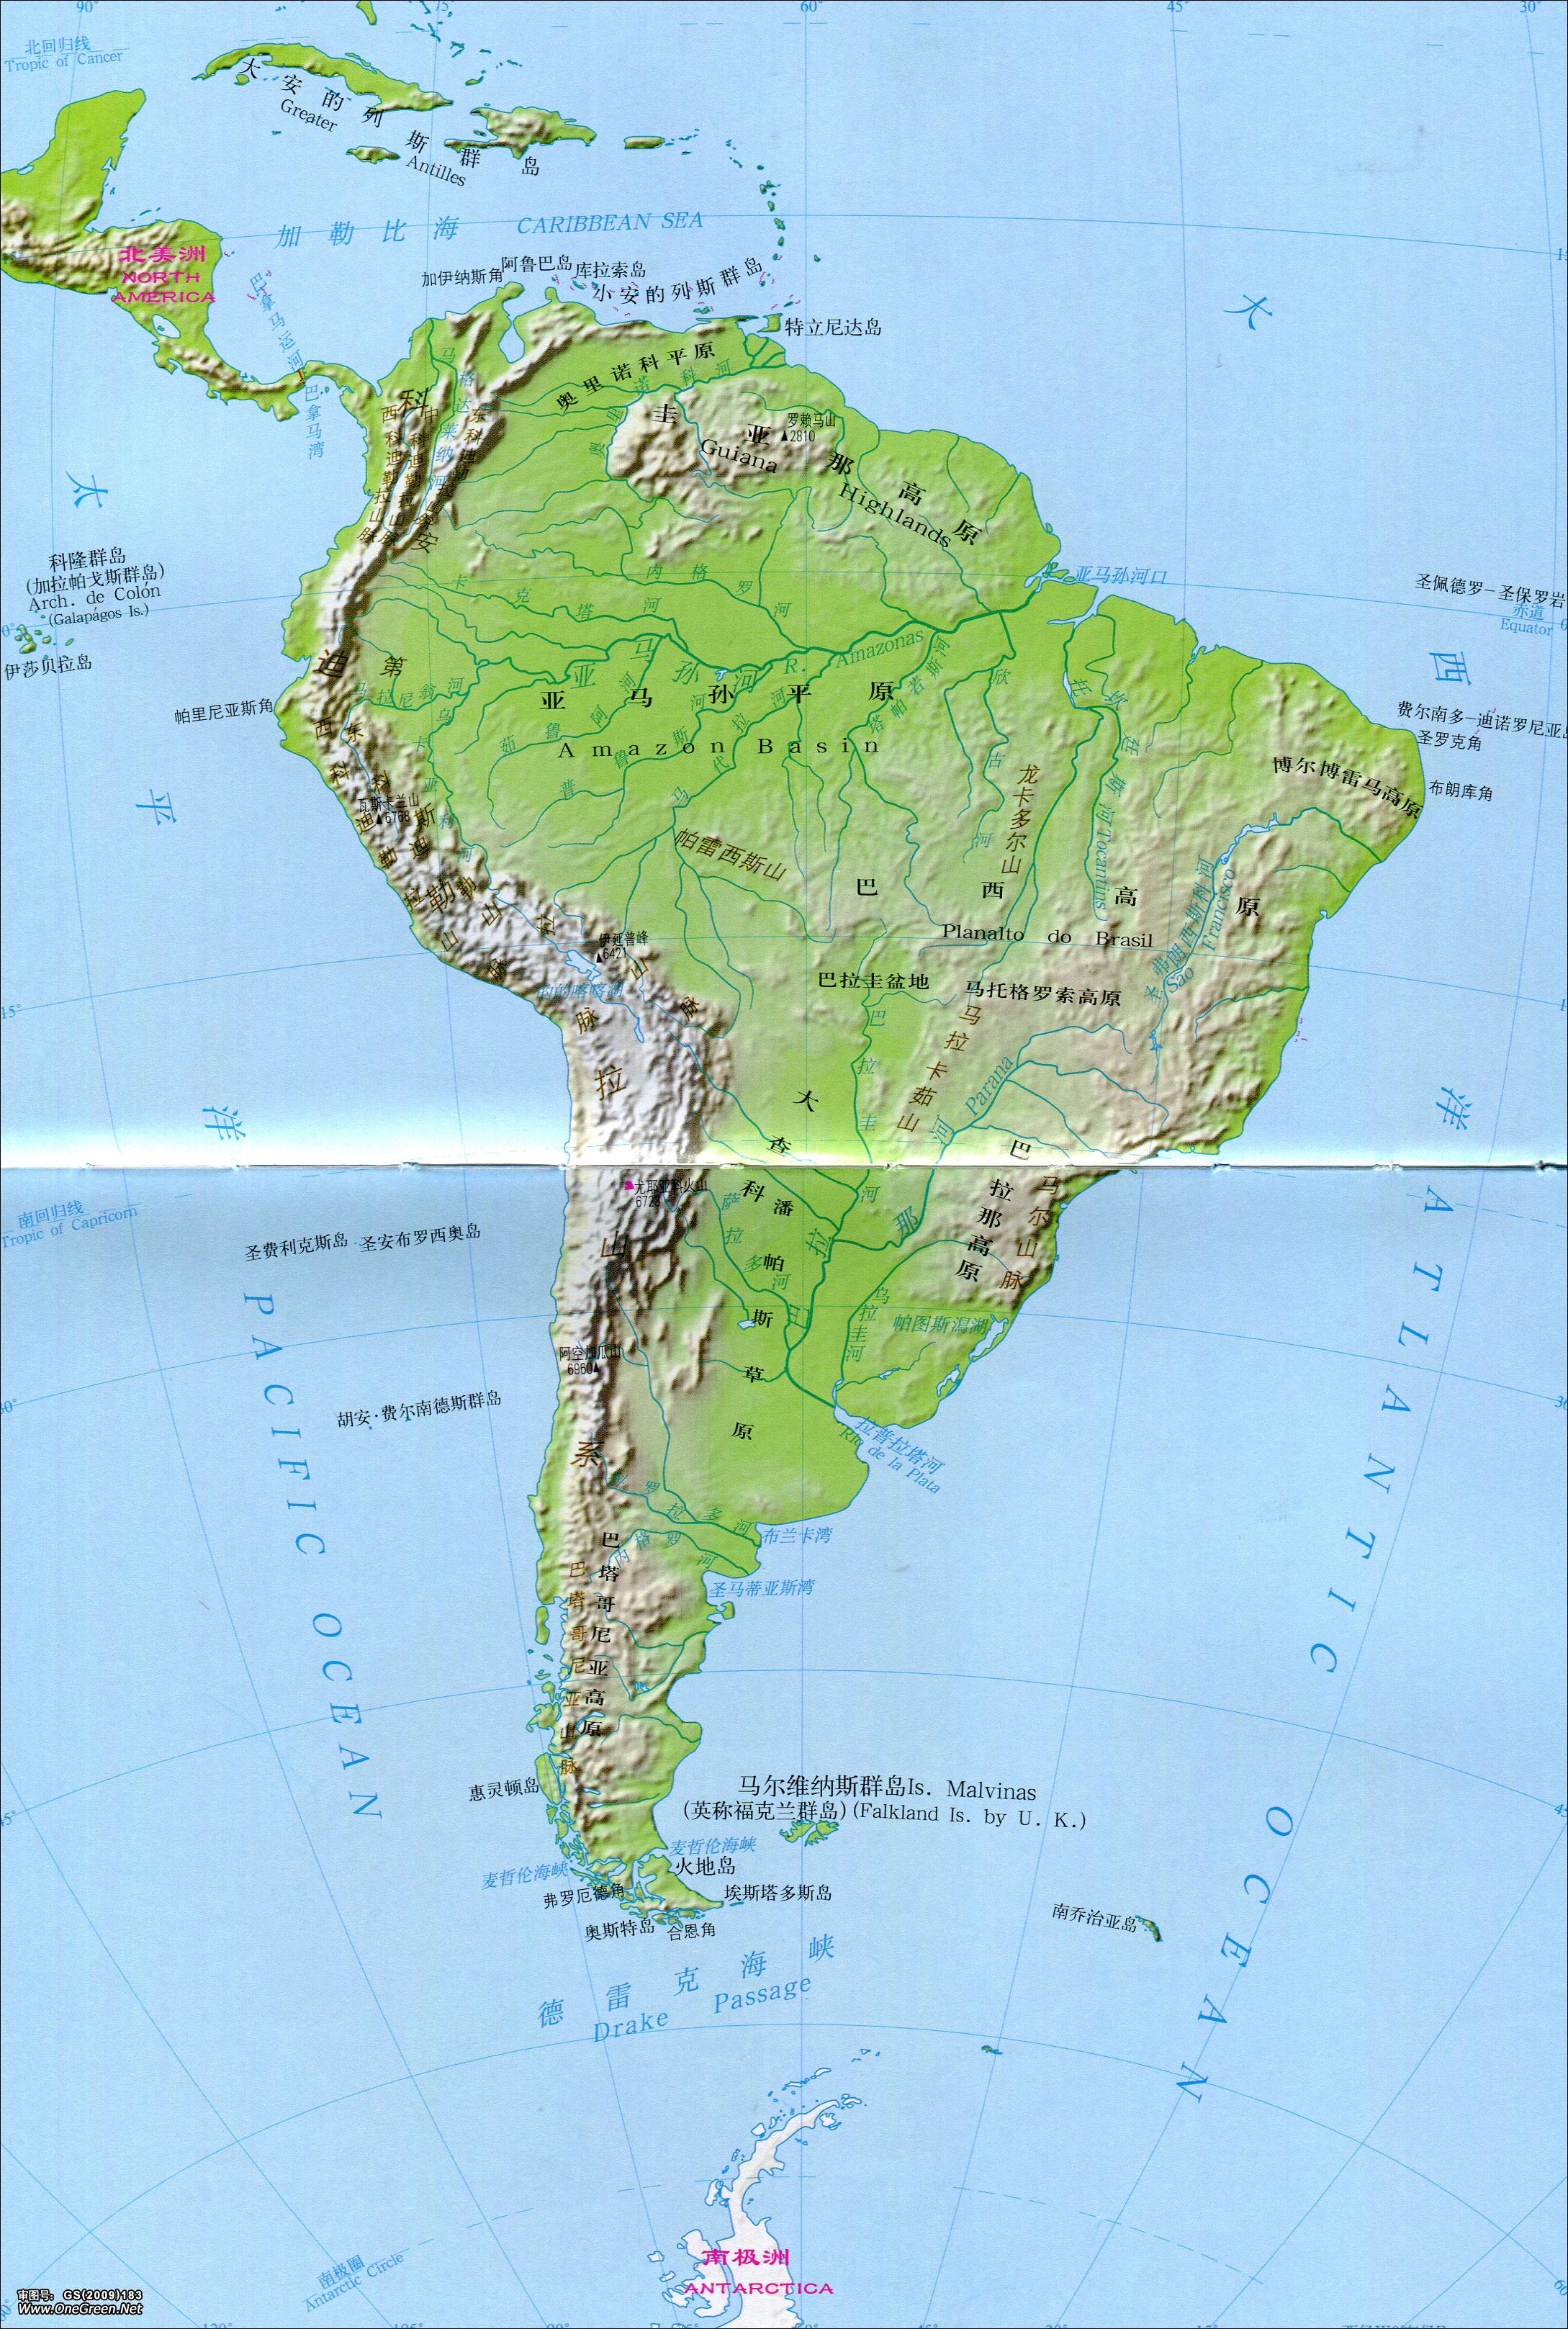 印象中的南美洲-旅游攻略-游记-去哪儿攻略